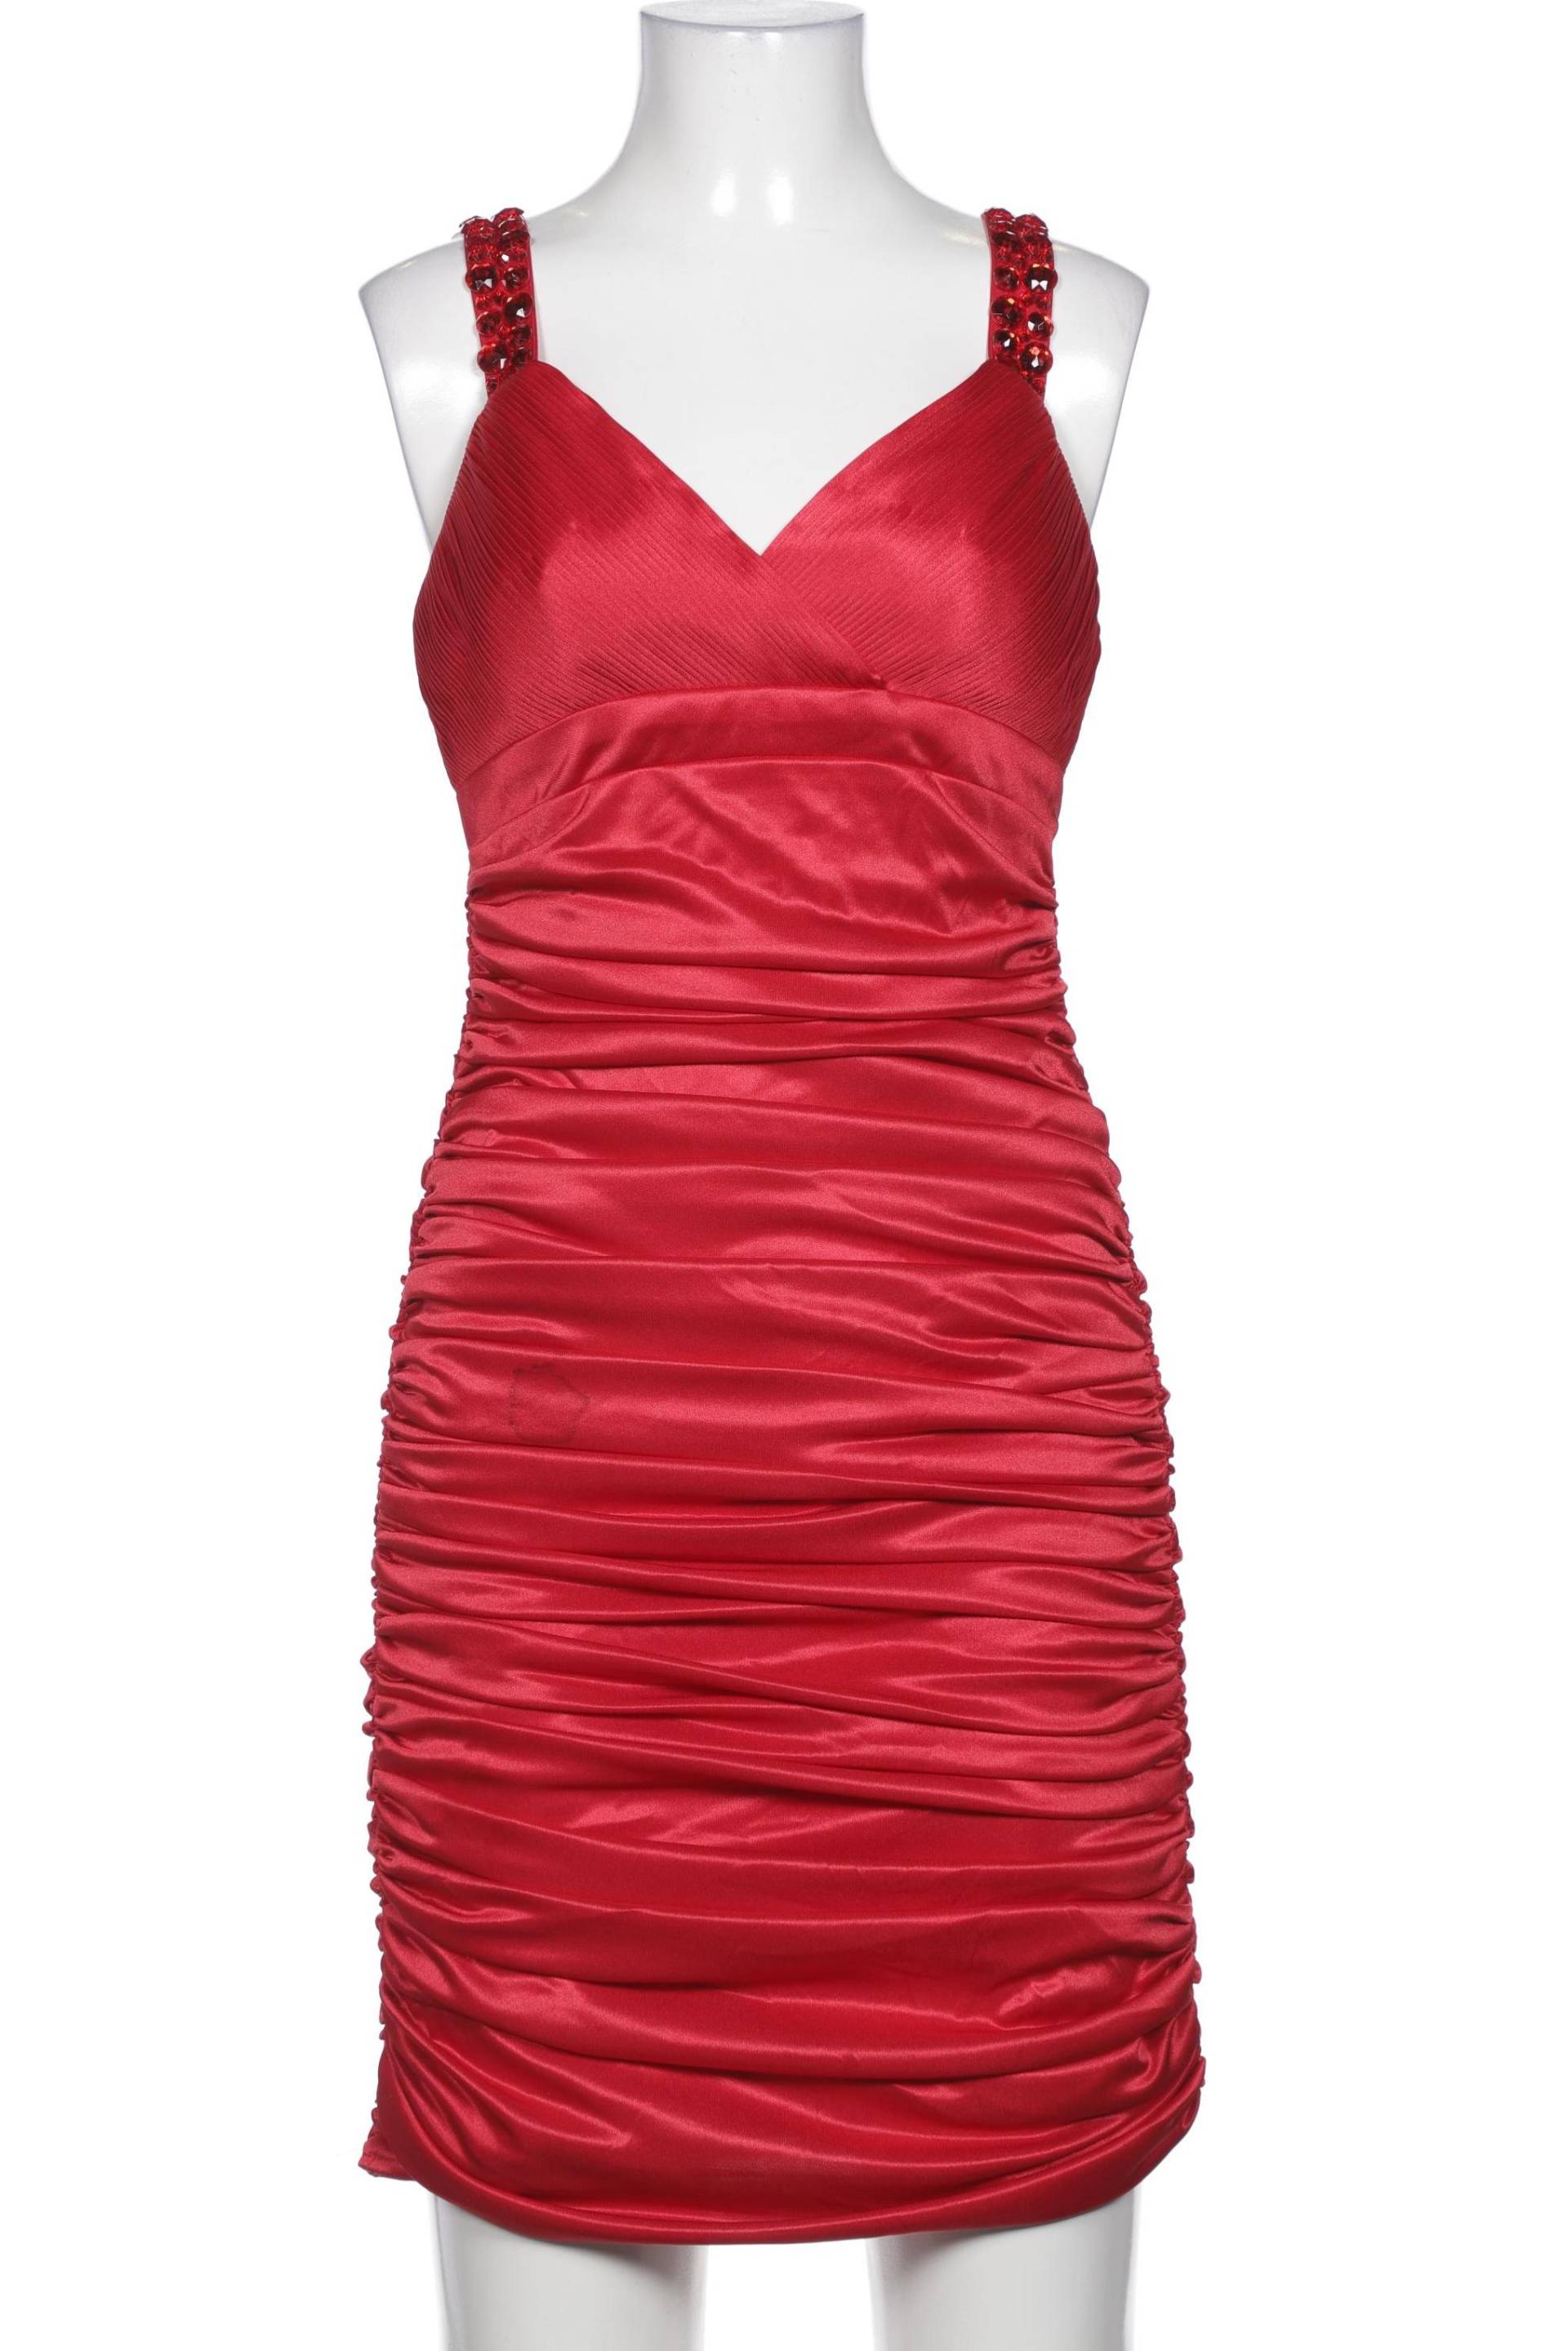 APART Damen Kleid, rot von Apart